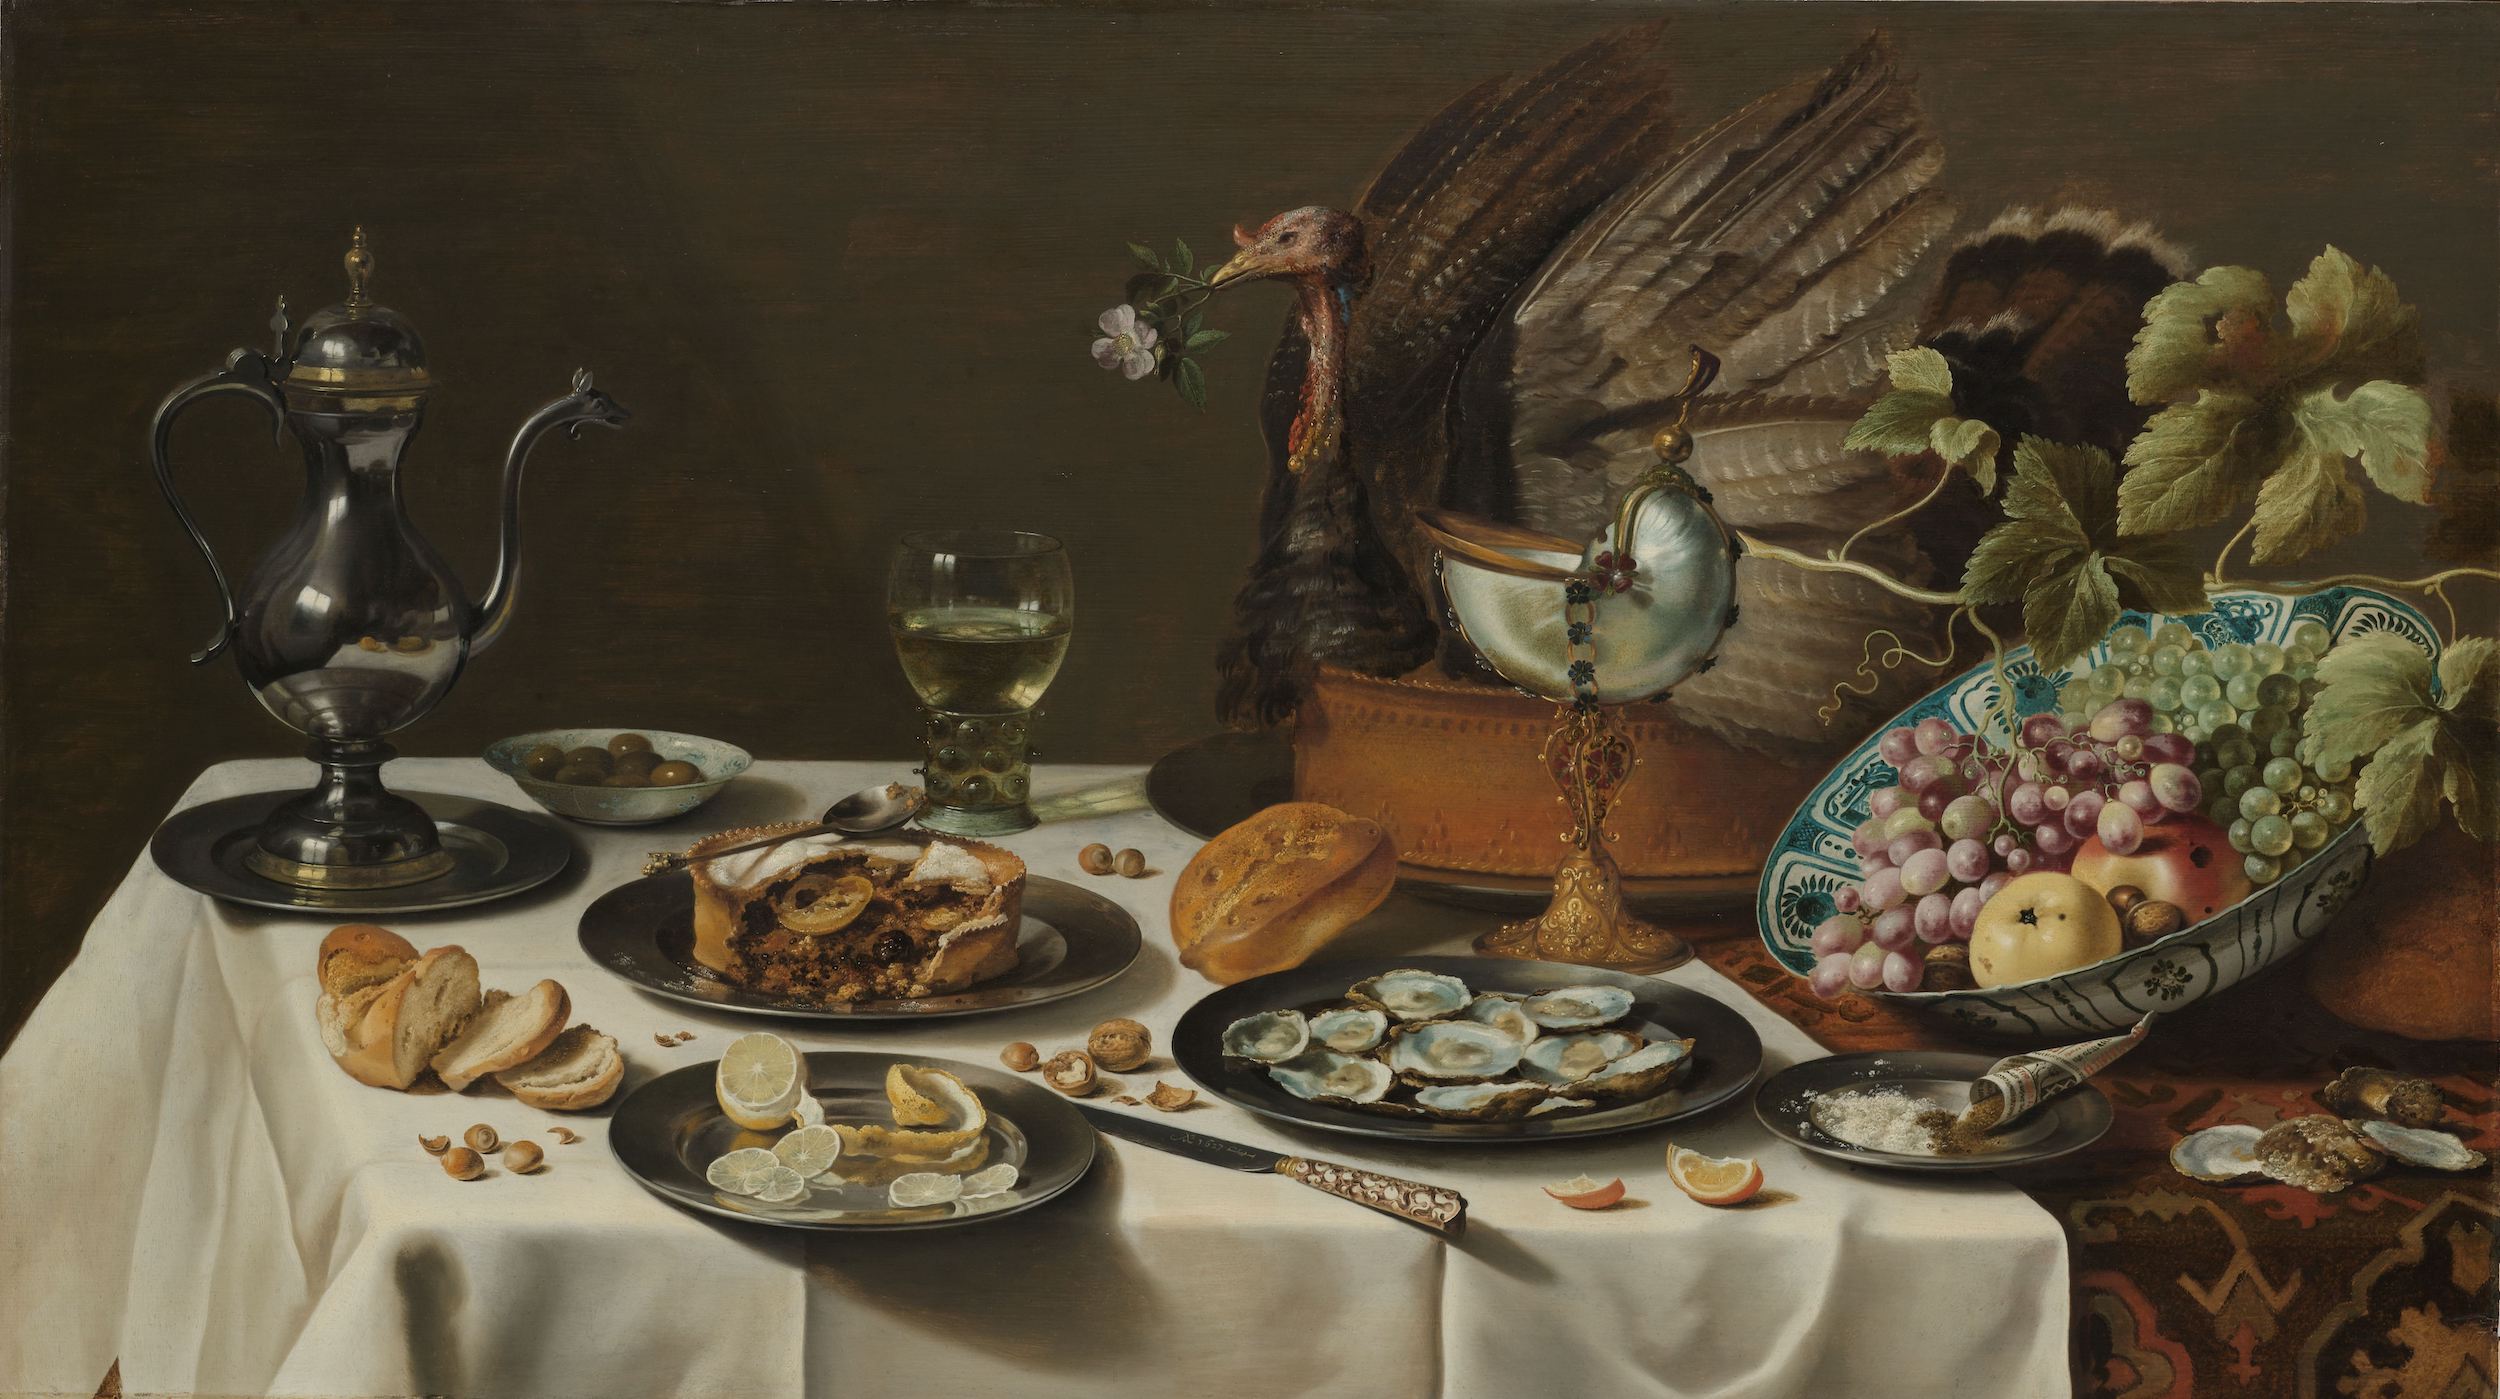 칠면조 파이가 있는 정물 (Still Life with a Turkey Pie) by Pieter Claesz - 1627 - 76.5 x 135 cm 